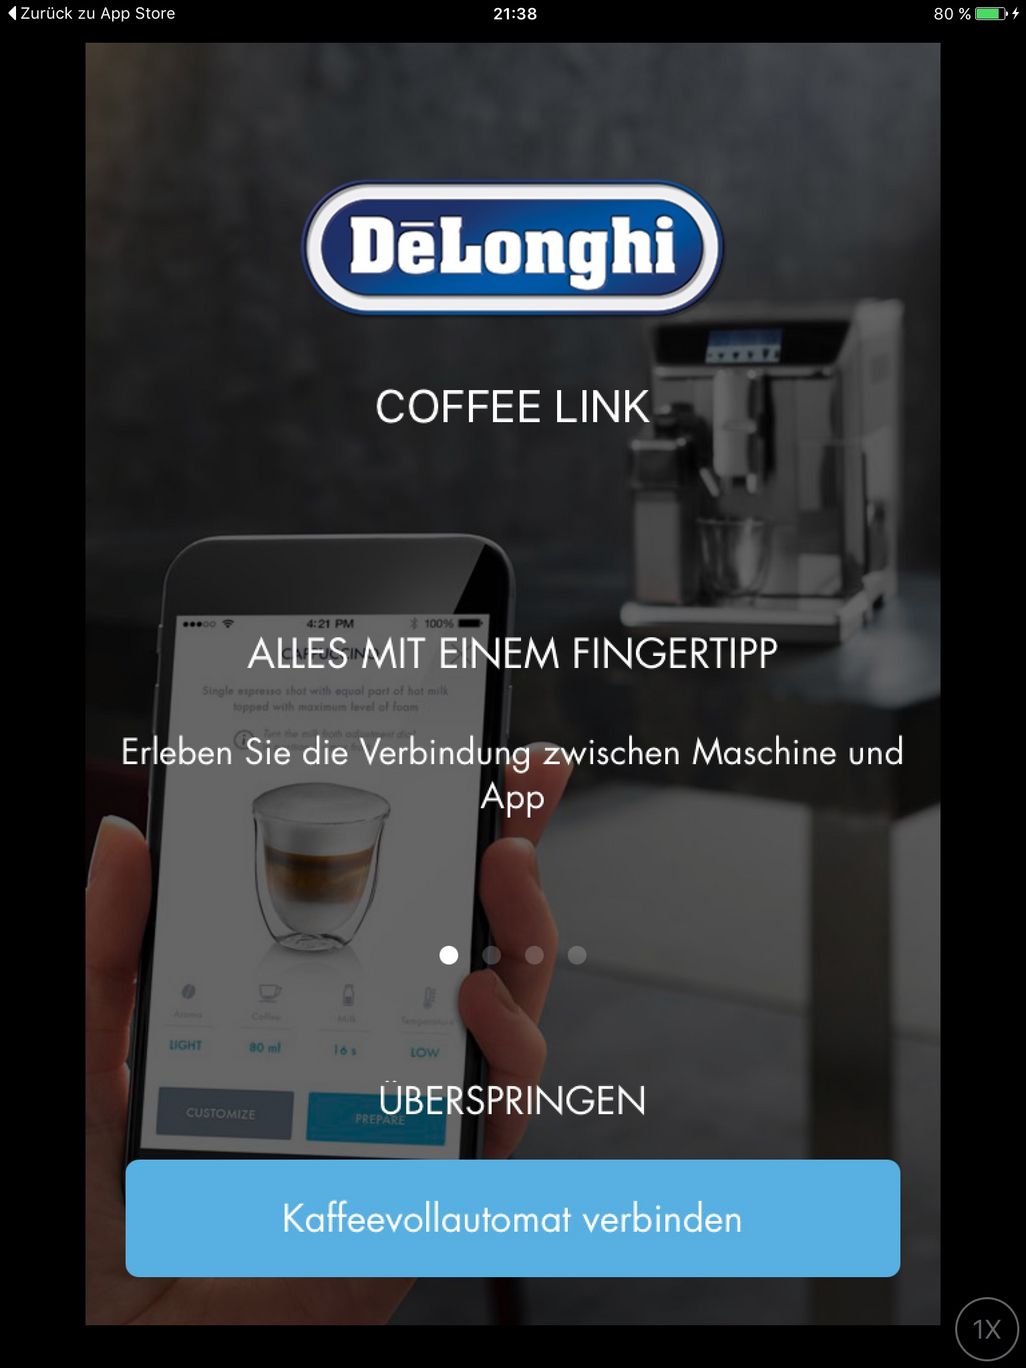 Die App muss sich mit dem Kaffeevollautomaten verbinden